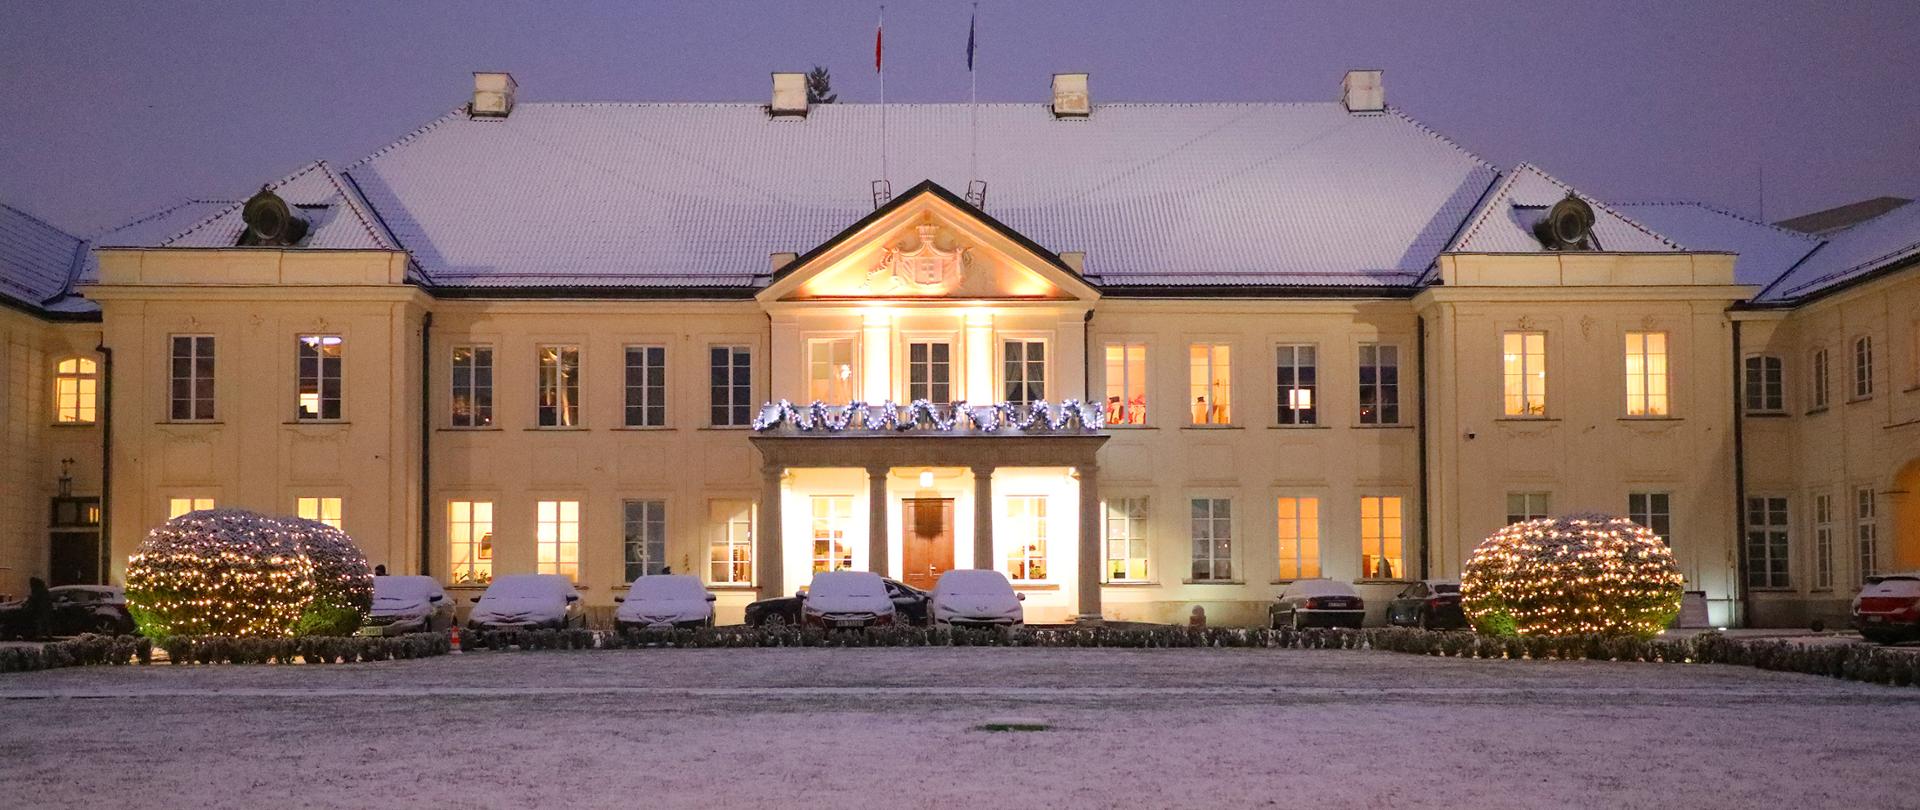 Ministerstwo Kultury i Dziedzictwa Narodowego - Pałac Potockich, ośnieżona fasada od strony dziedzica 